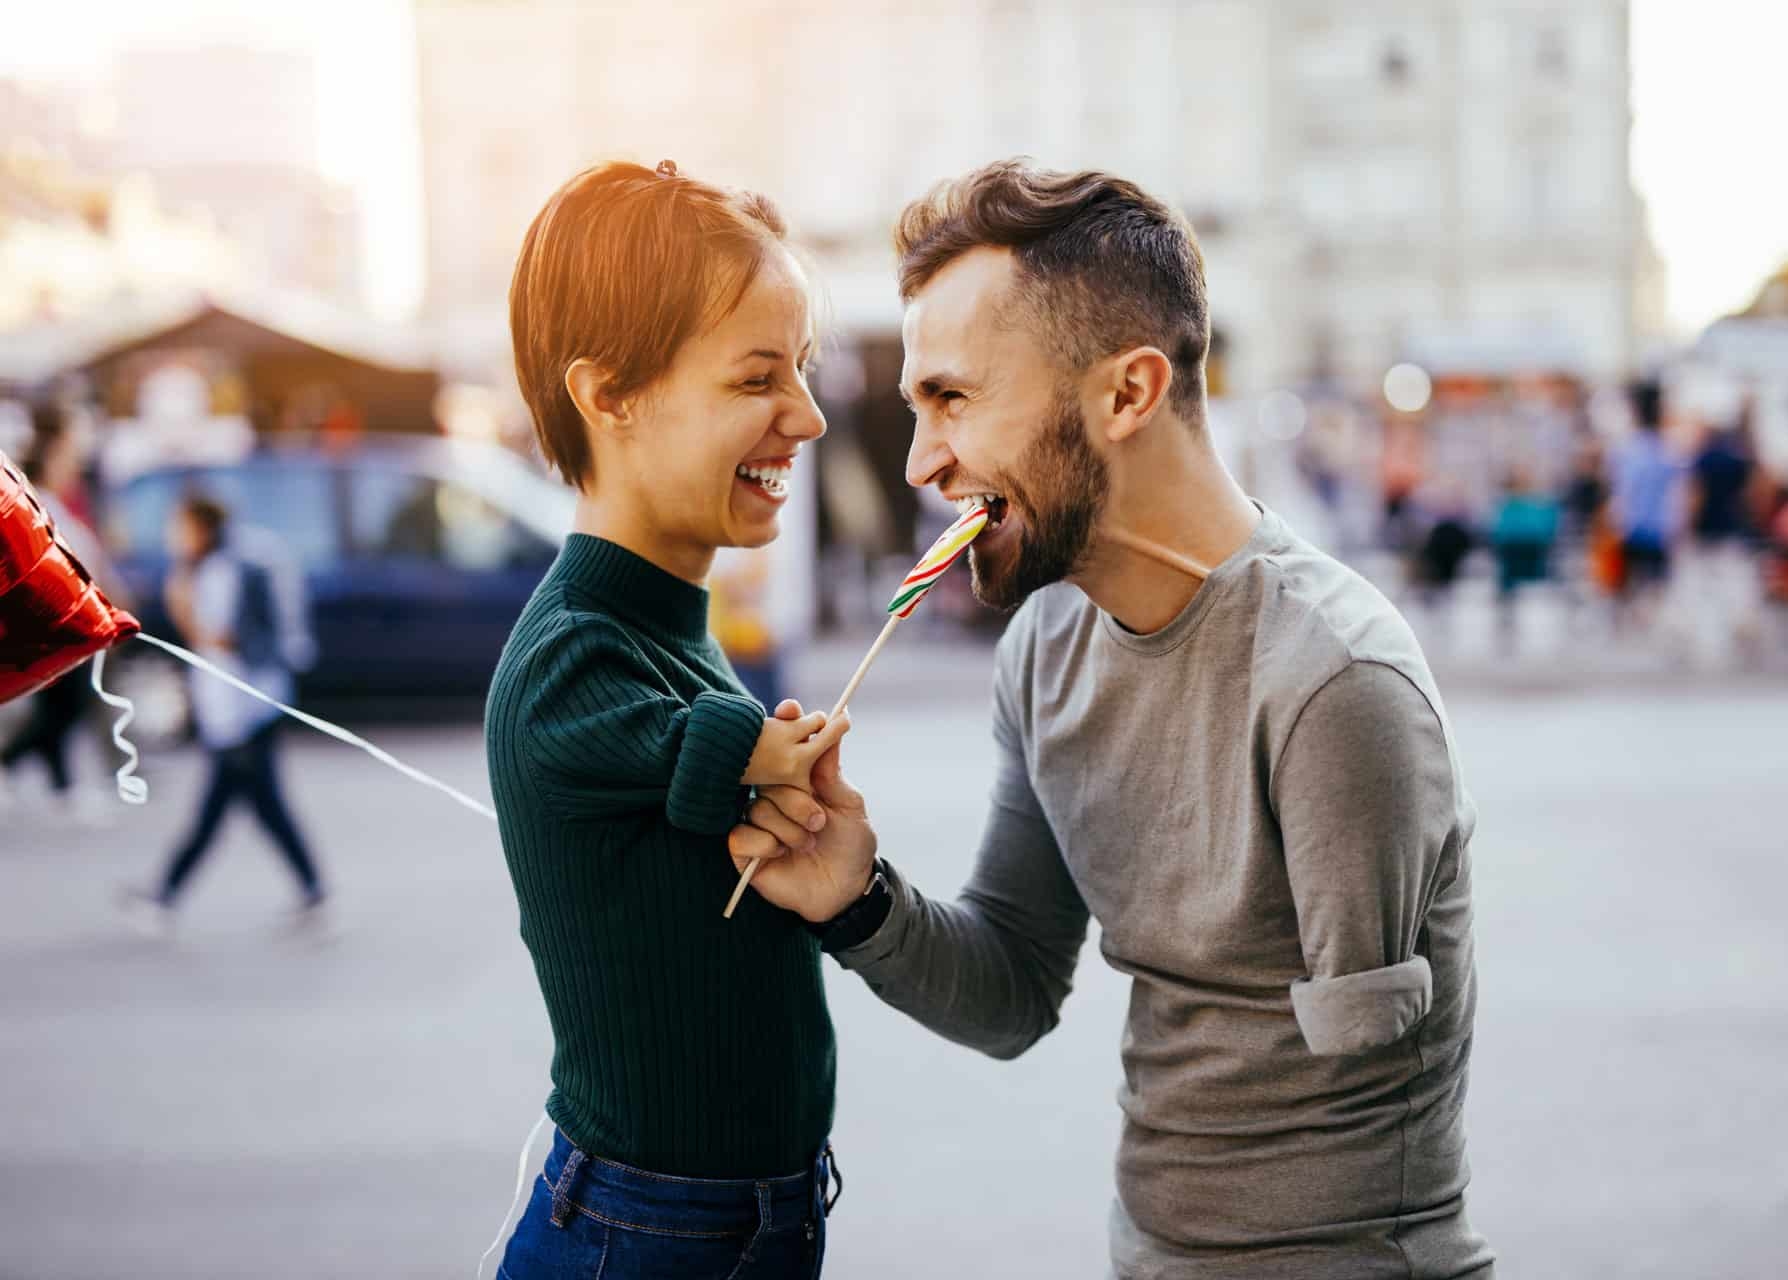 Romantische Liebesbeziehung von junger Frau mit Behinderung und ihrem Partner mit Behinderung. sie hält großen Lollipop in Hand und lässt ihn abbeißen